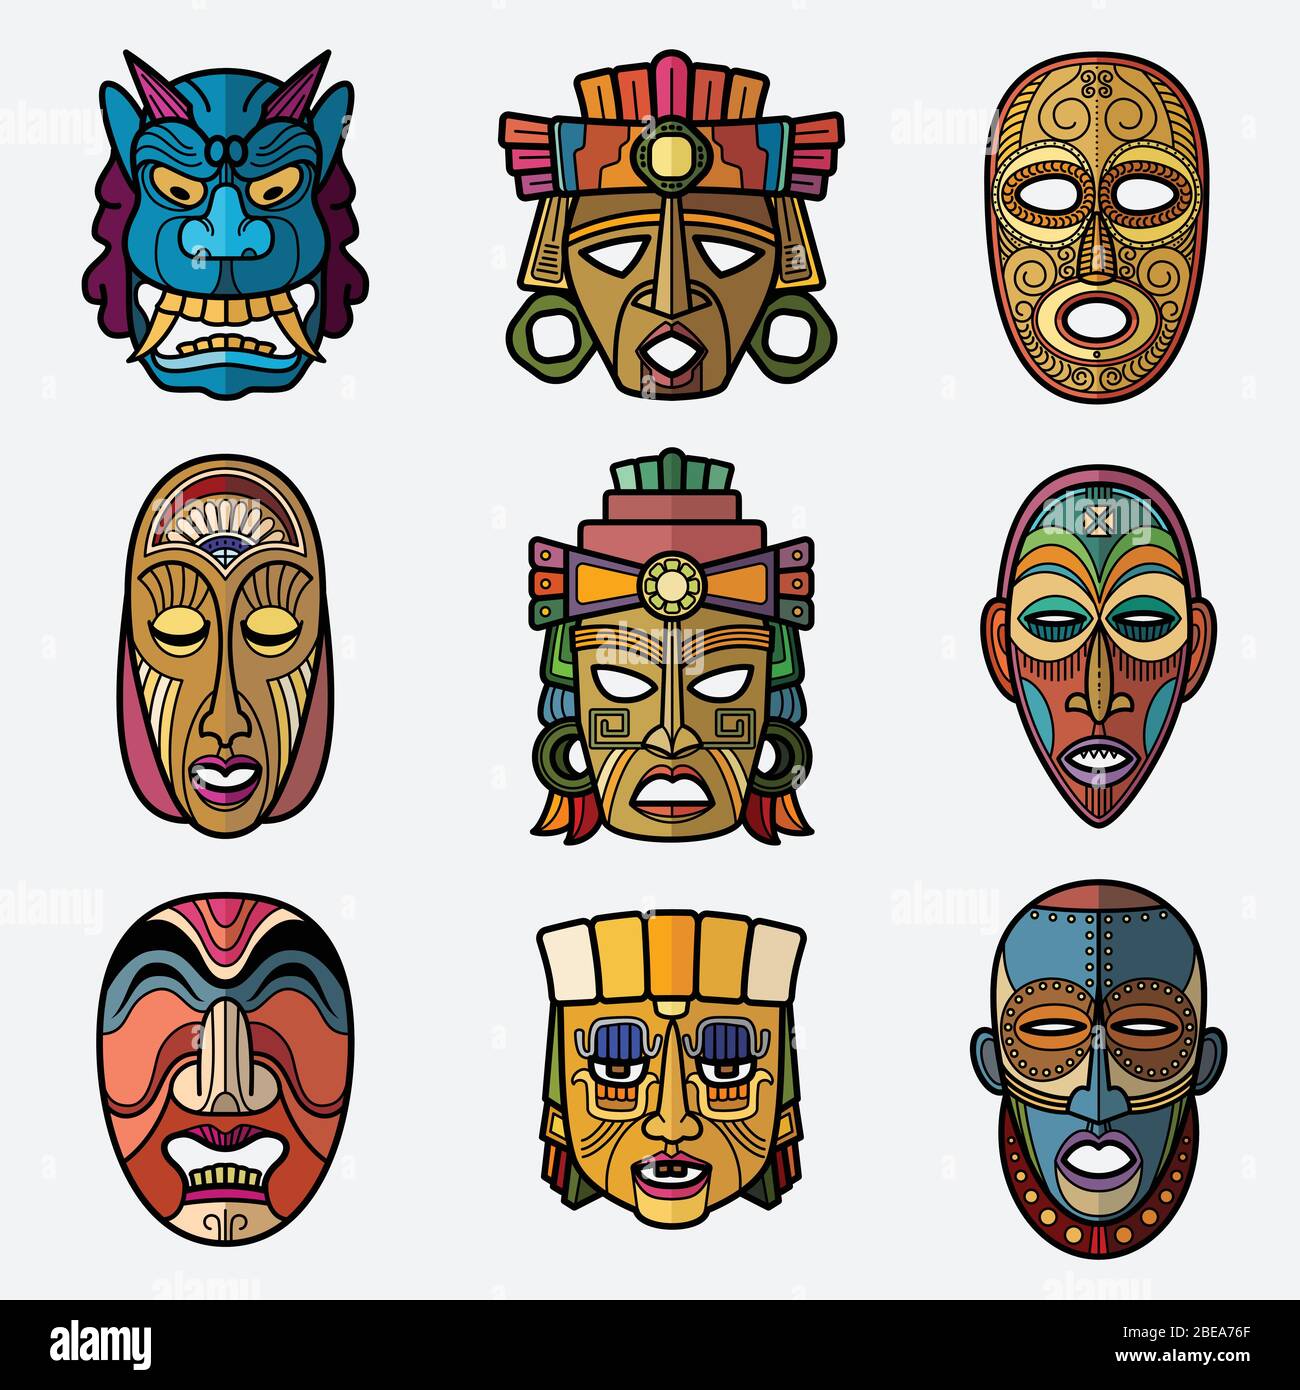 Afrikanische Handwerk Voodoo Stammes-Maske und inka südamerikanischen Kultur Totem Symbole Vektor-Set. Afrikanische Maske Souvenir, Voodoo traditionelle Gesichtsillustrierung Stock Vektor